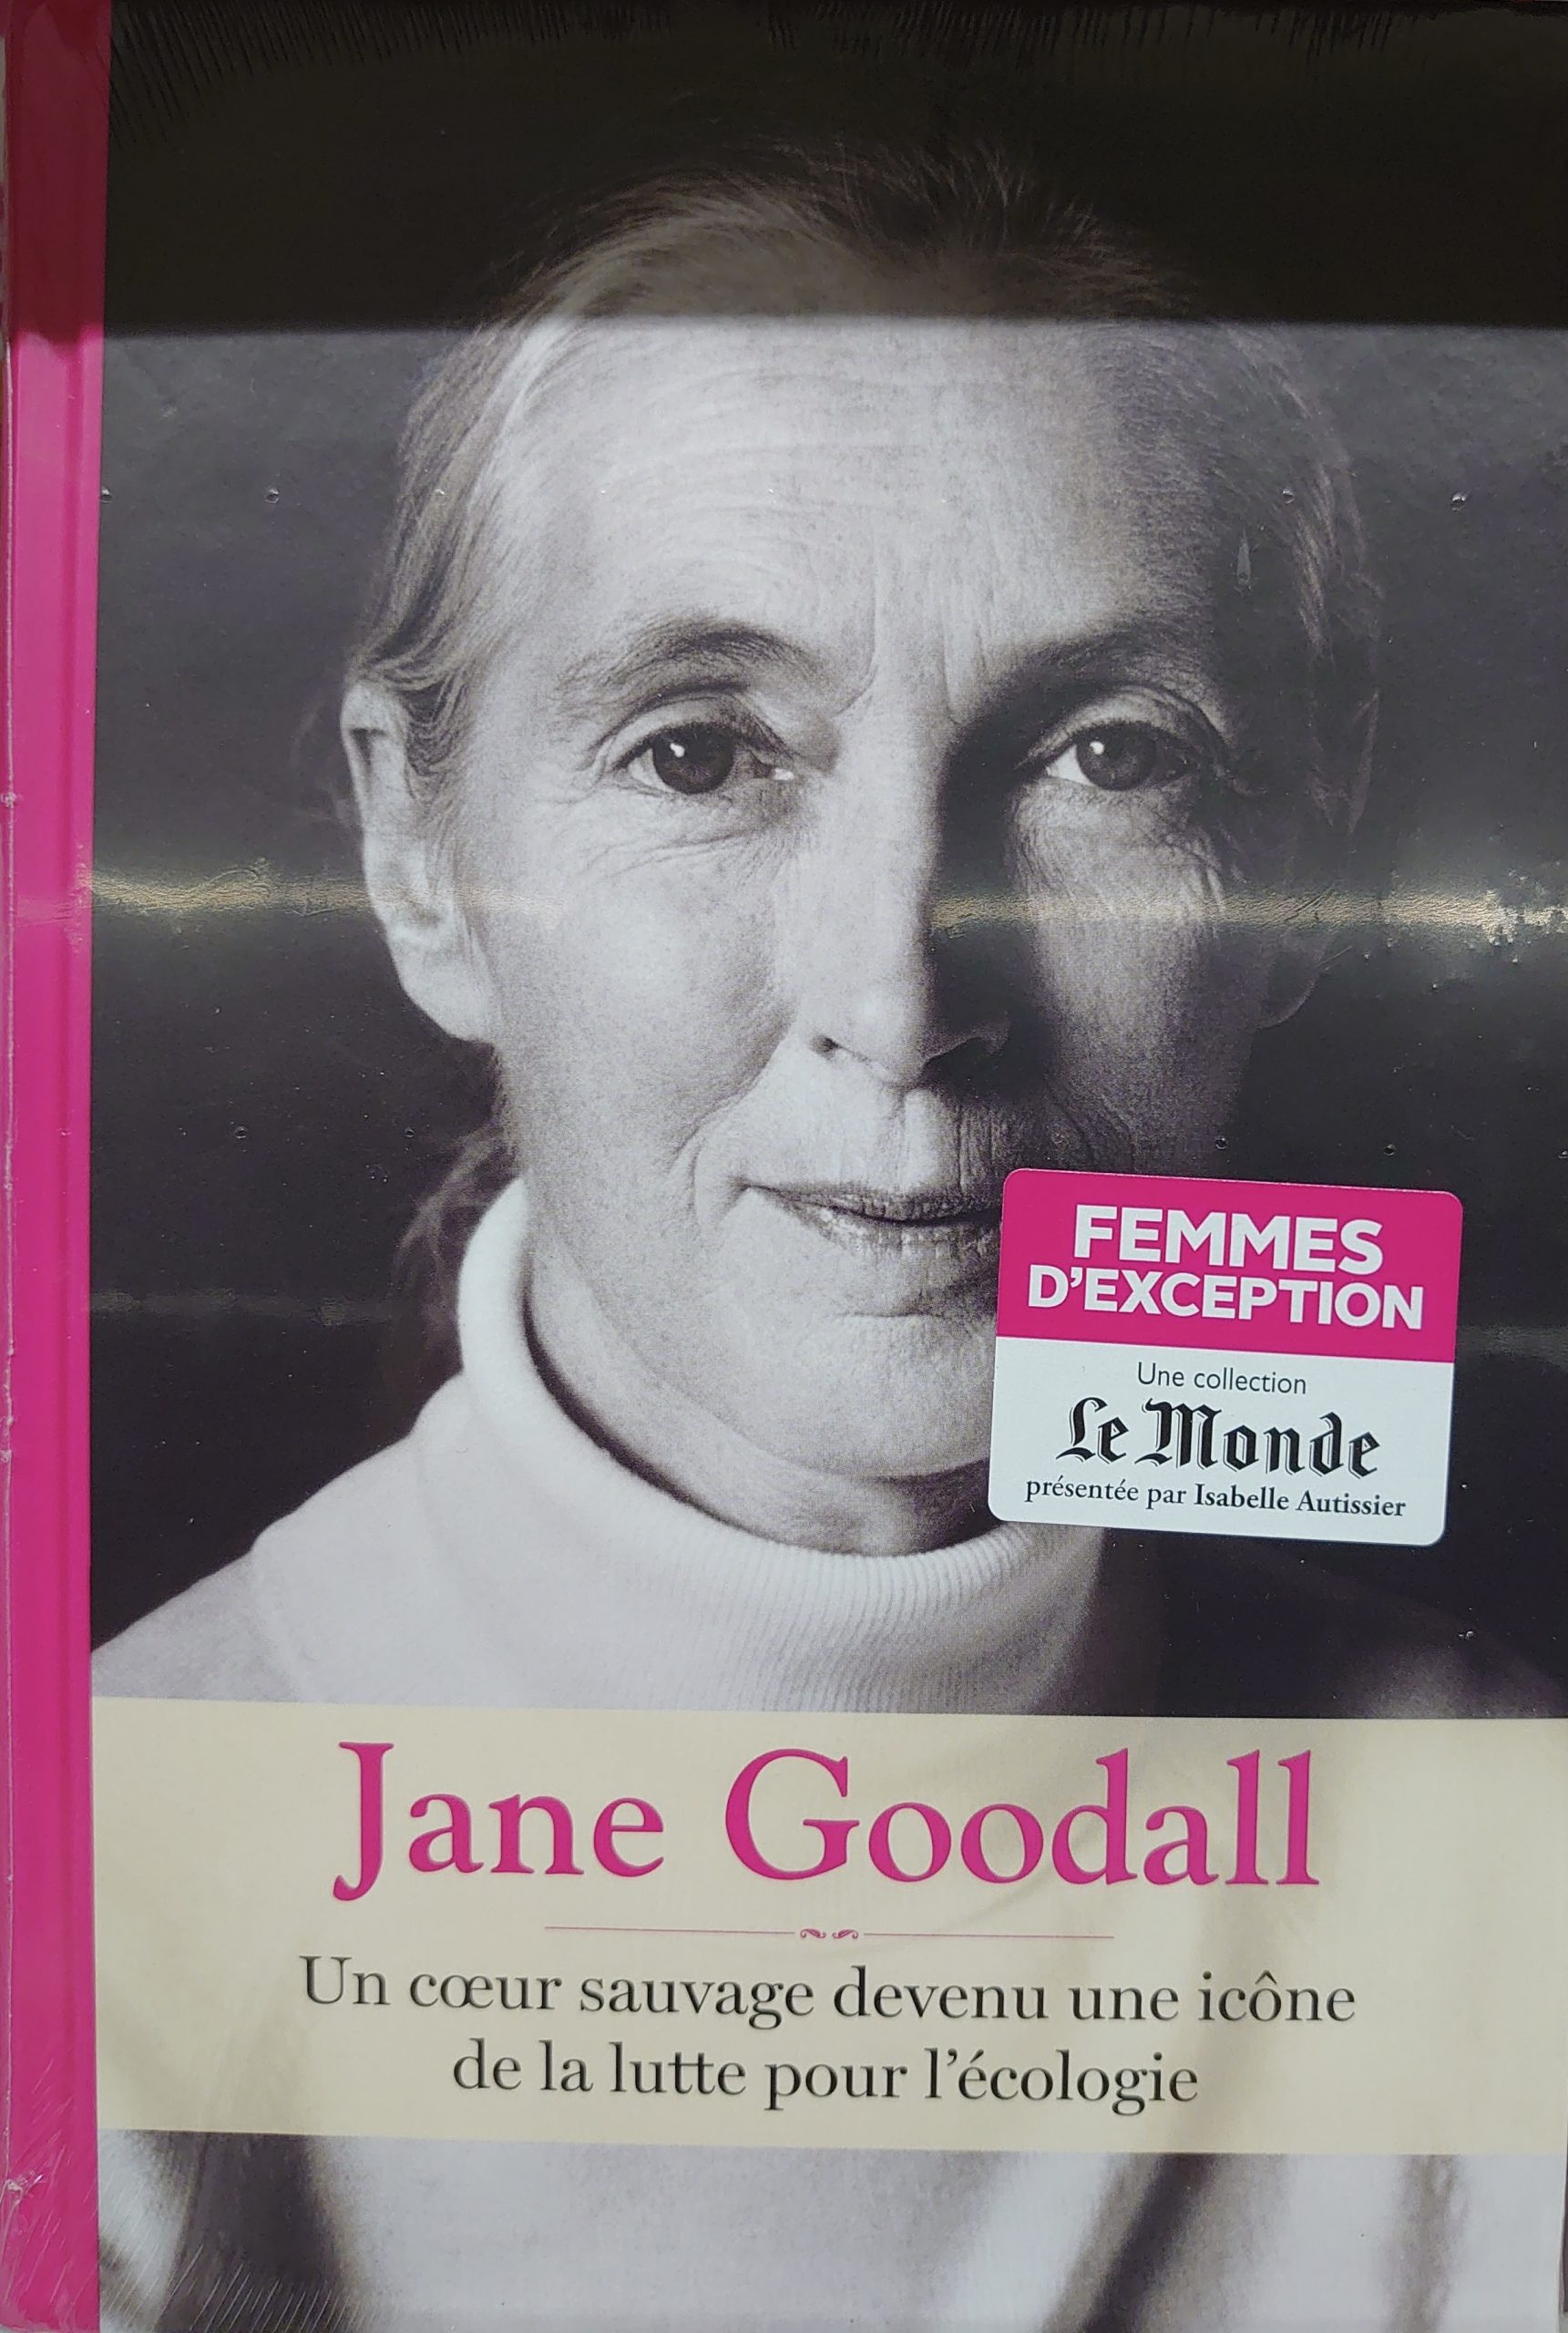 Livre paru aux Editions Le Monde, Jane Goodall - Un cœur sauvage devenu une icone de la lutte pour l’écologie